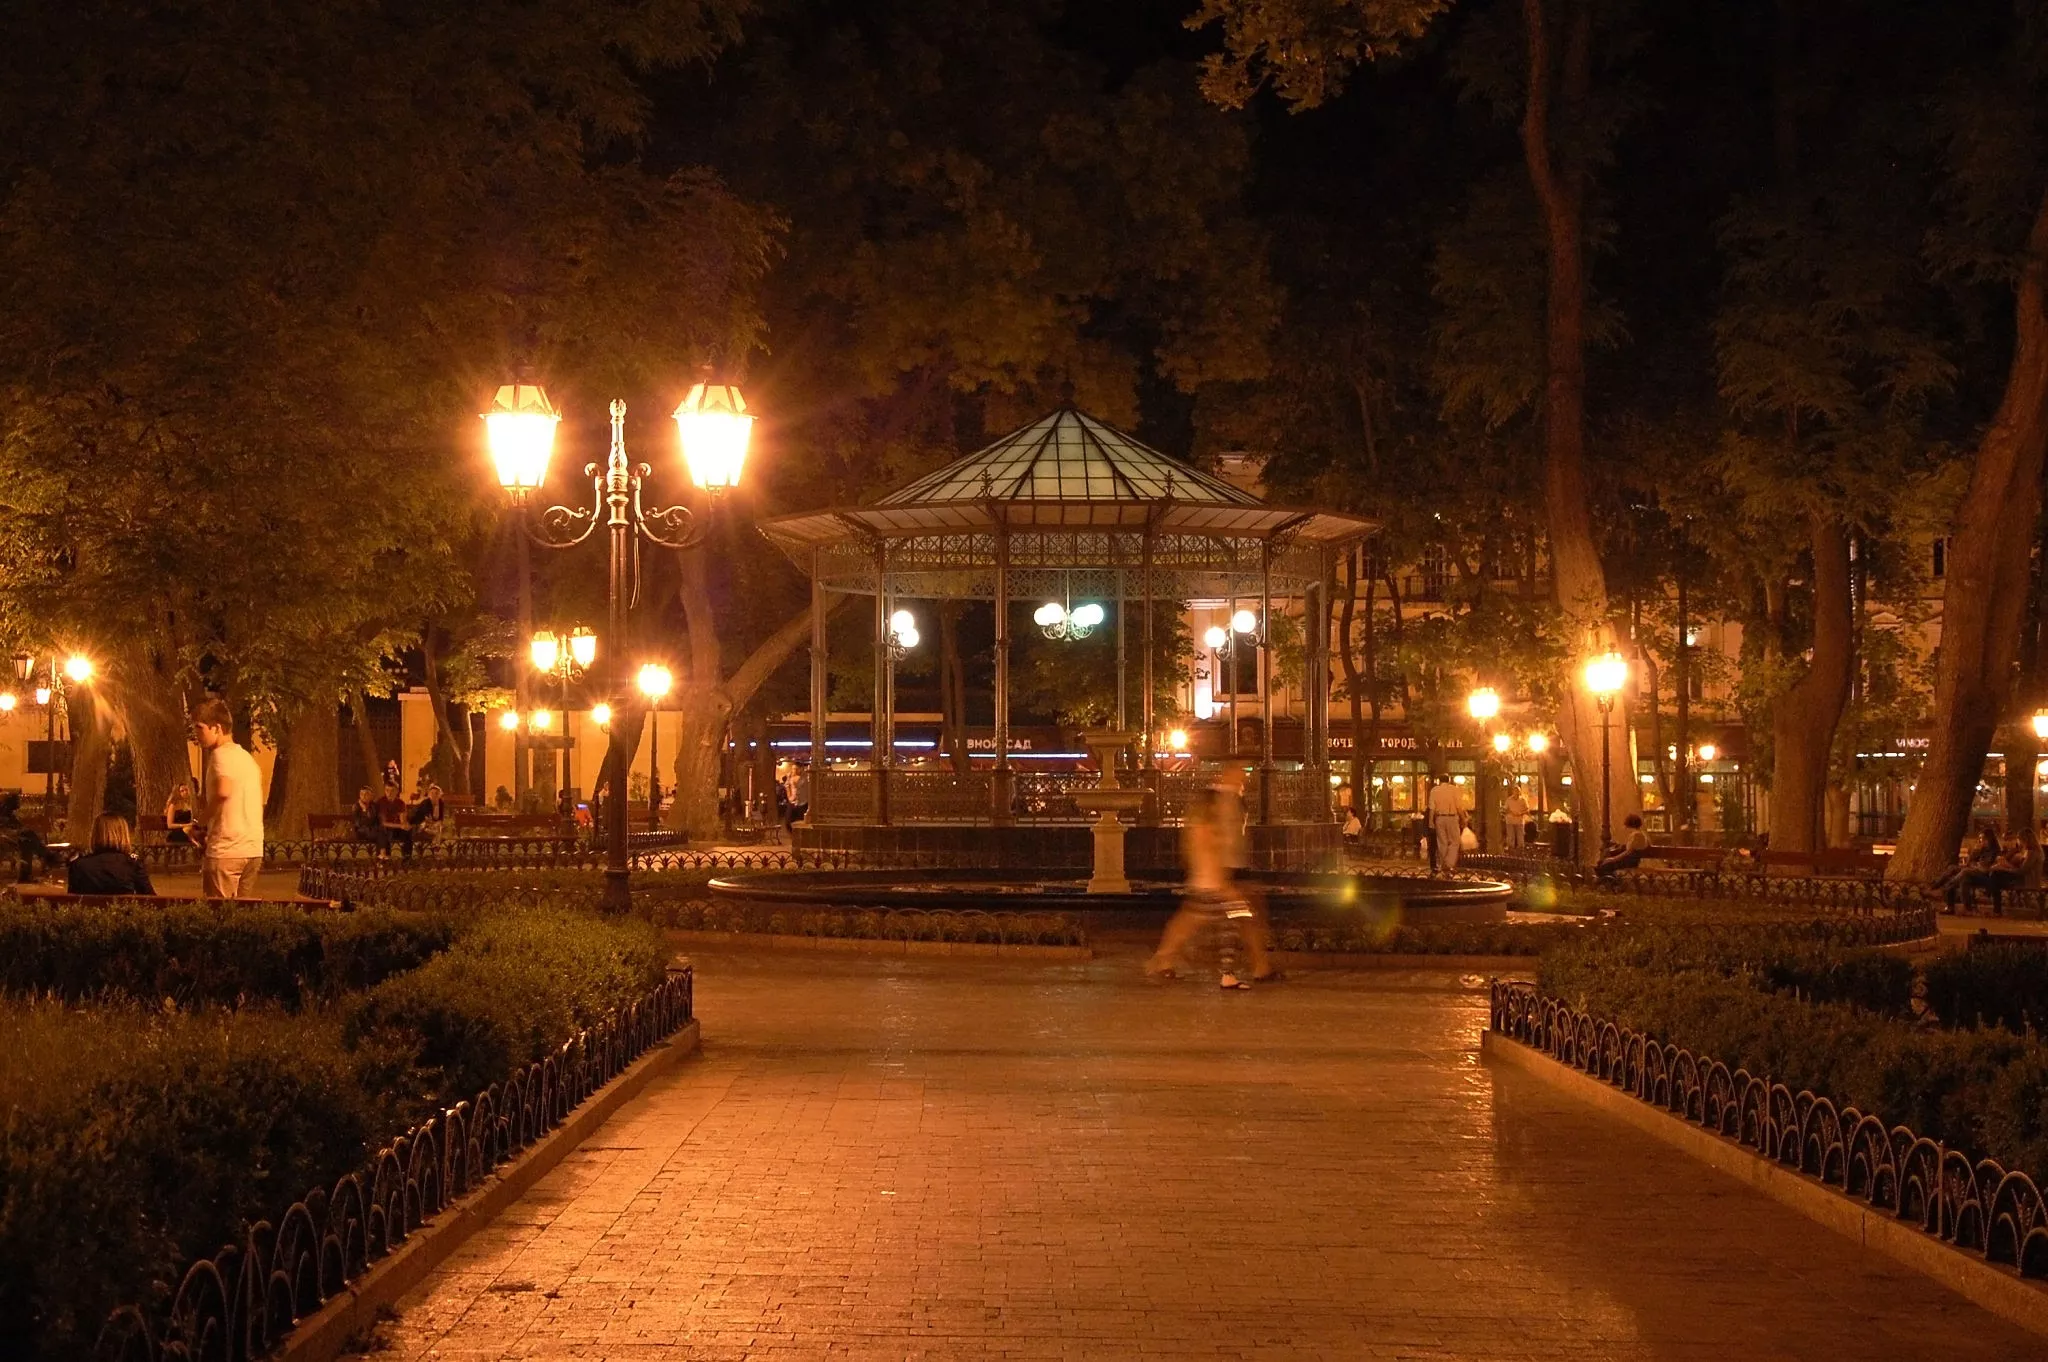 Odessa City Garden in Ukraine, Europe | Parks,Gardens - Rated 5